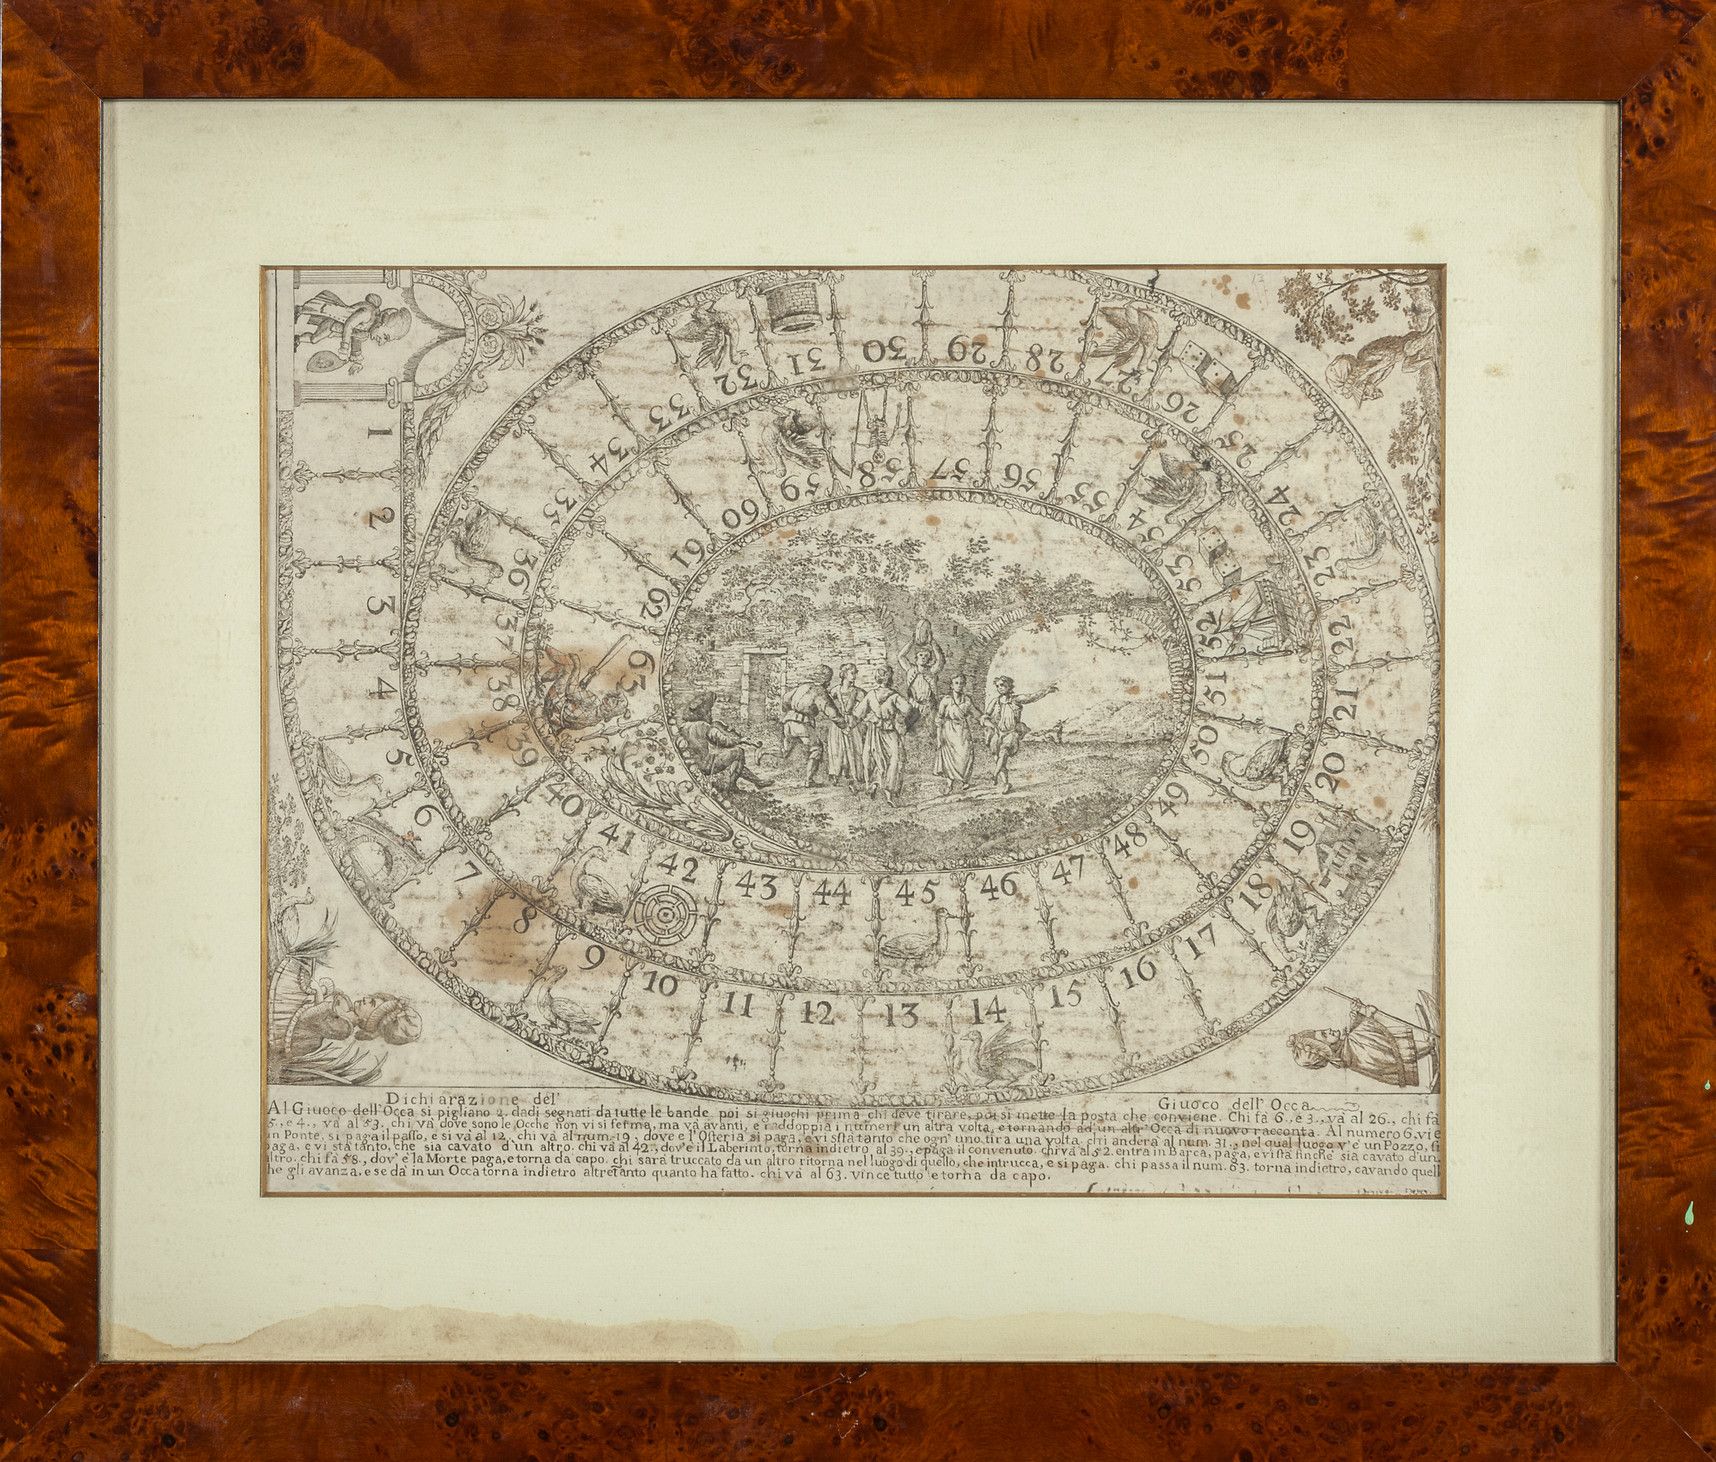 OGGETTISTICA Erklärung des Gänsespiels Italien-Venedig 18. Jahrhundert
cm. 46x36